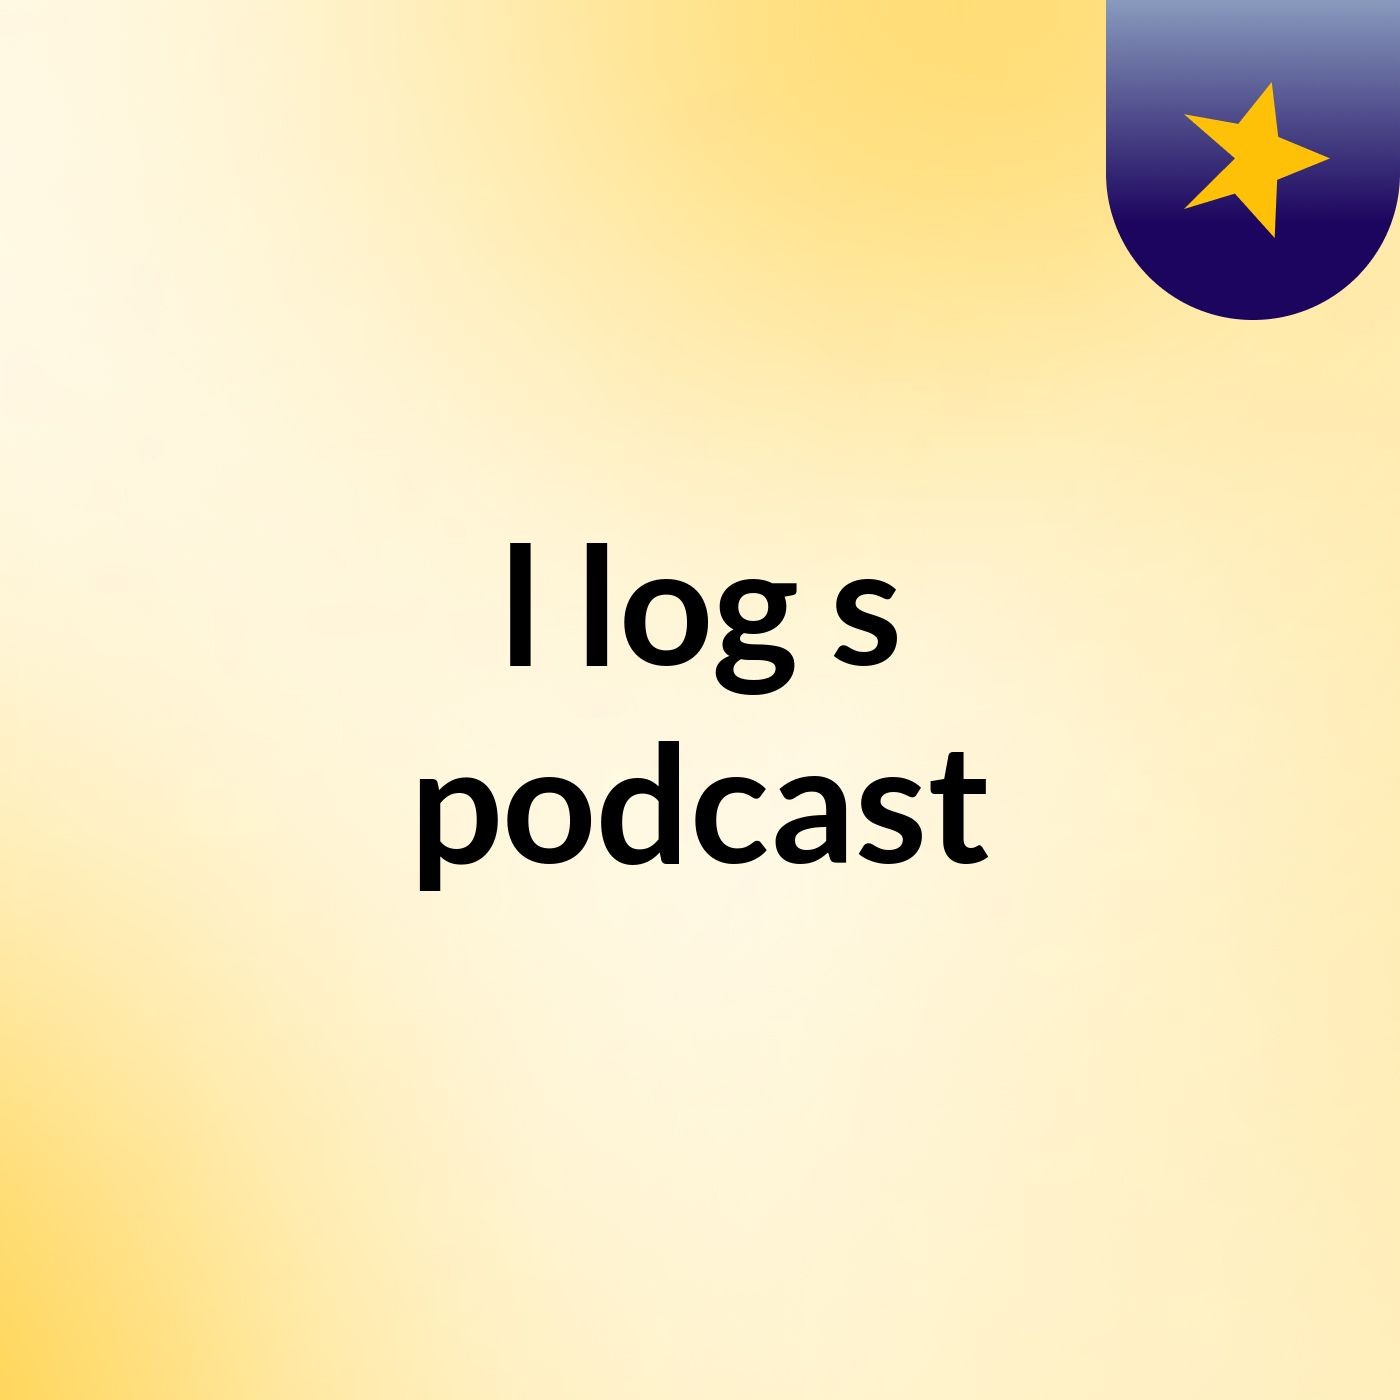 l log's podcast